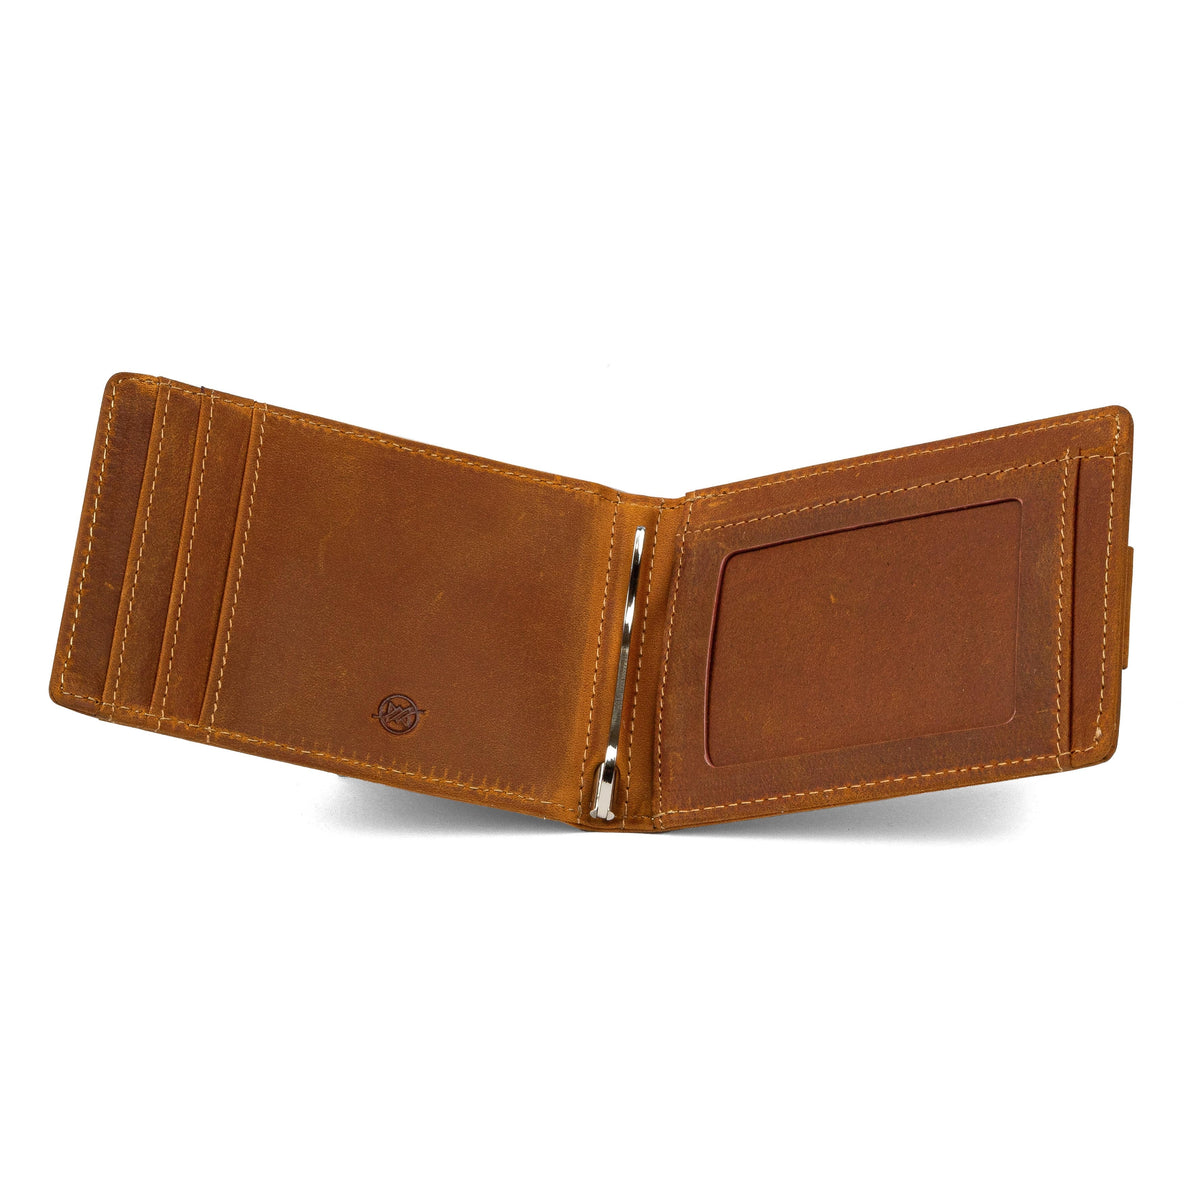  Air Tag Wallet  Premium Genuine Leather RFID Credit